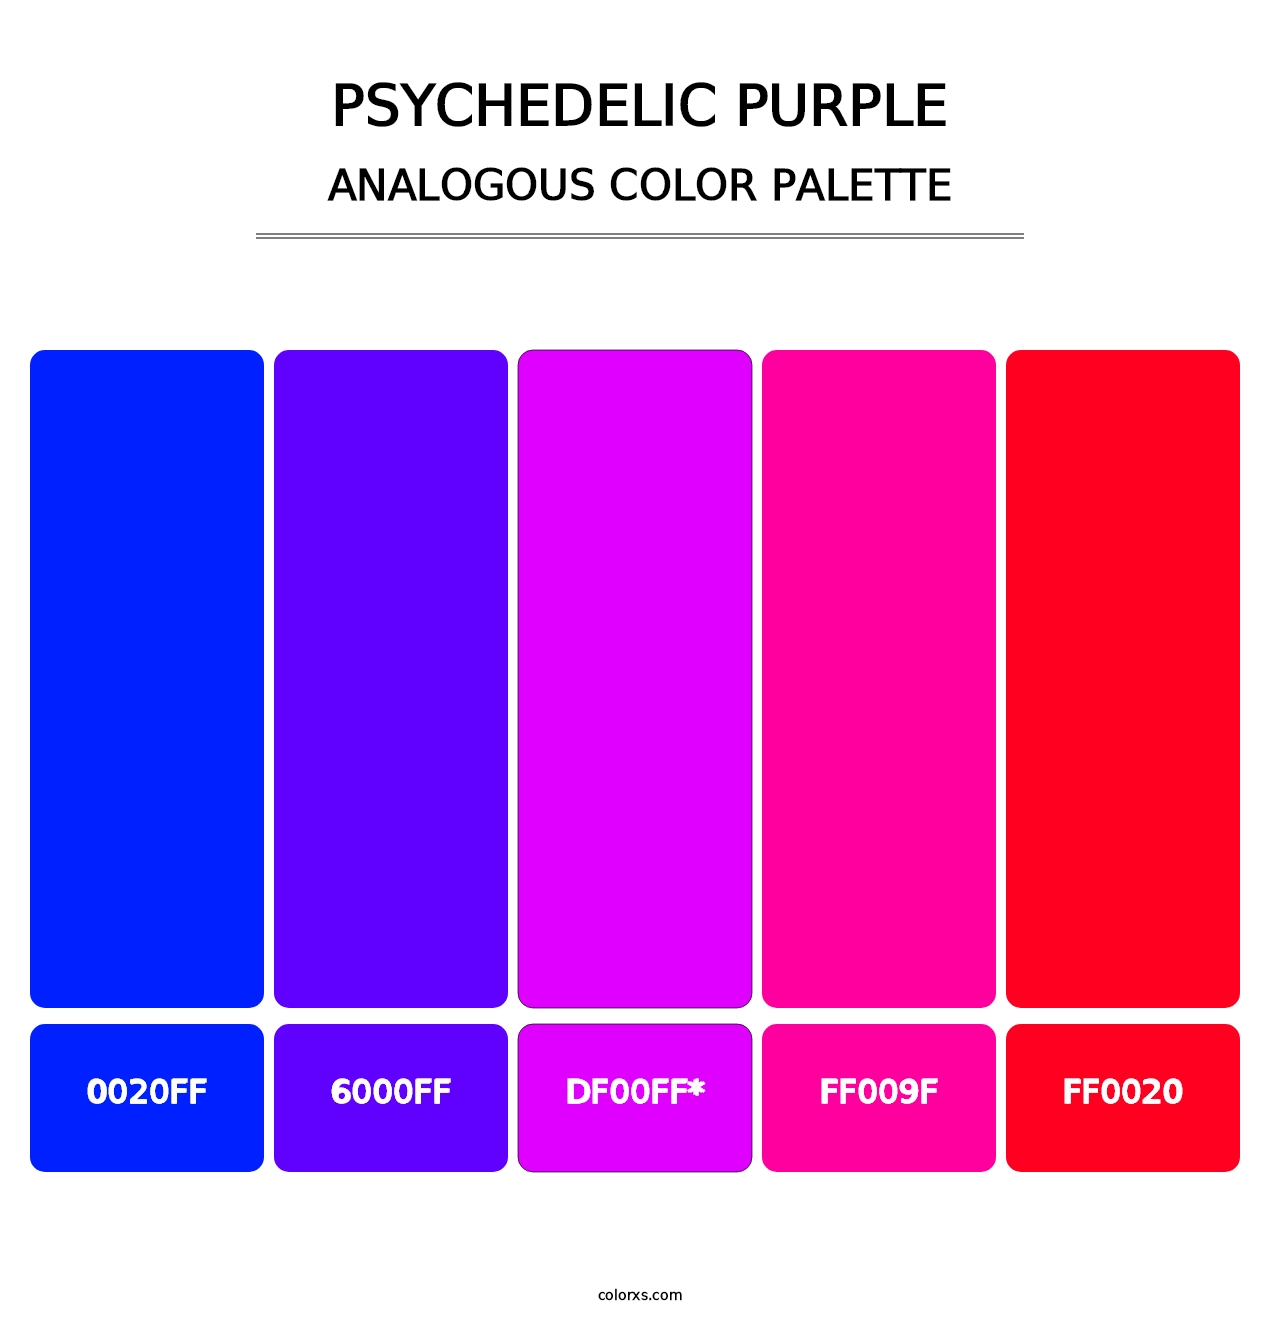 Psychedelic Purple - Analogous Color Palette